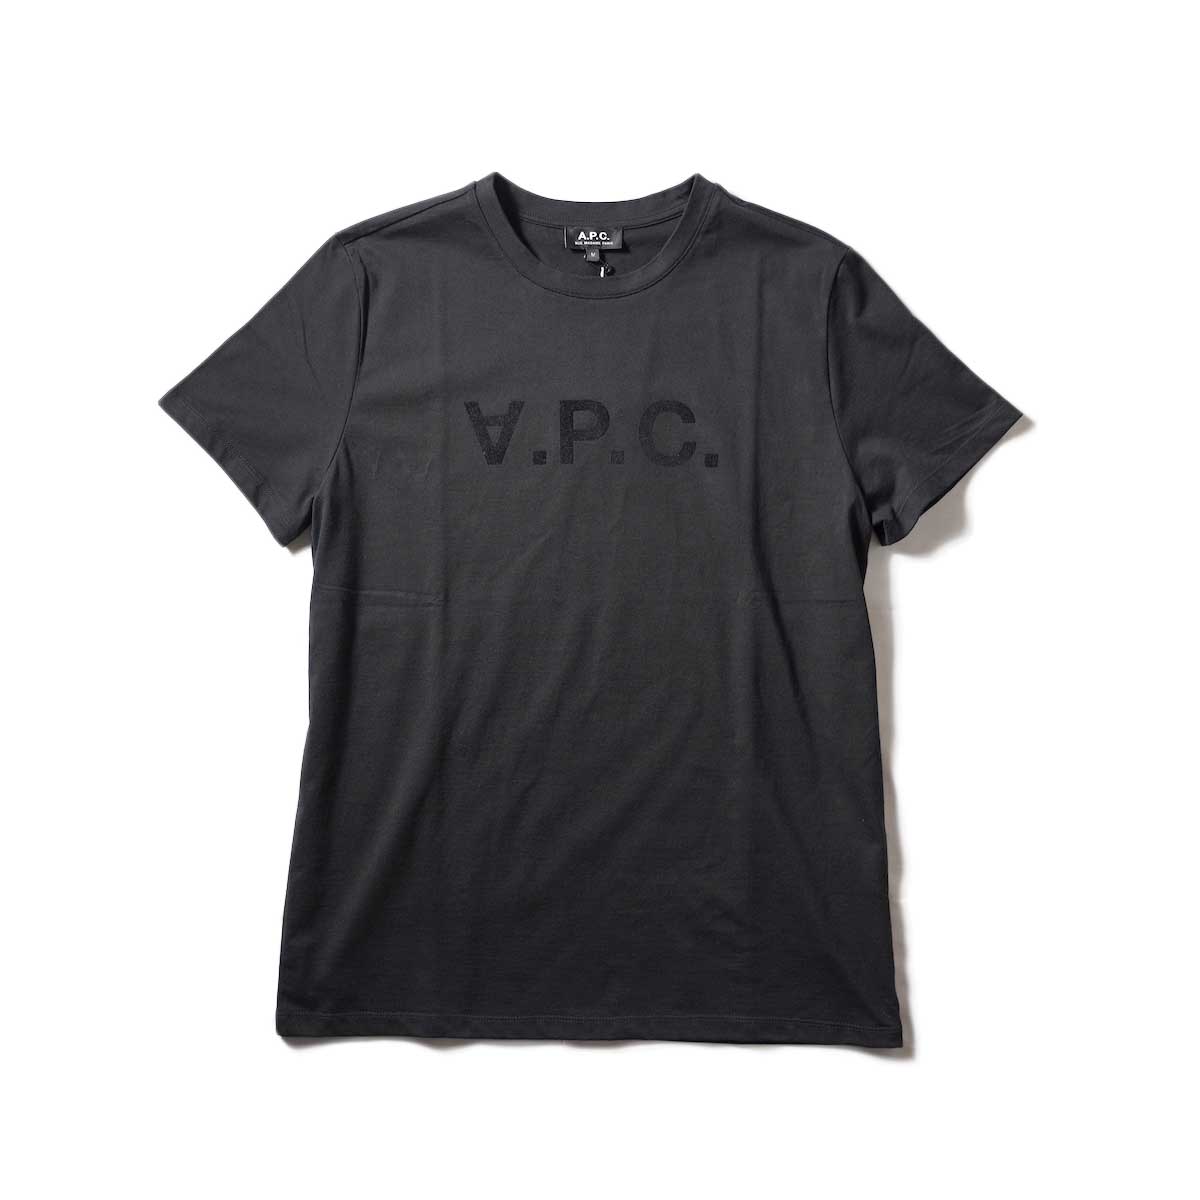 A.P.C. / VPC カラーTシャツ (Black)正面